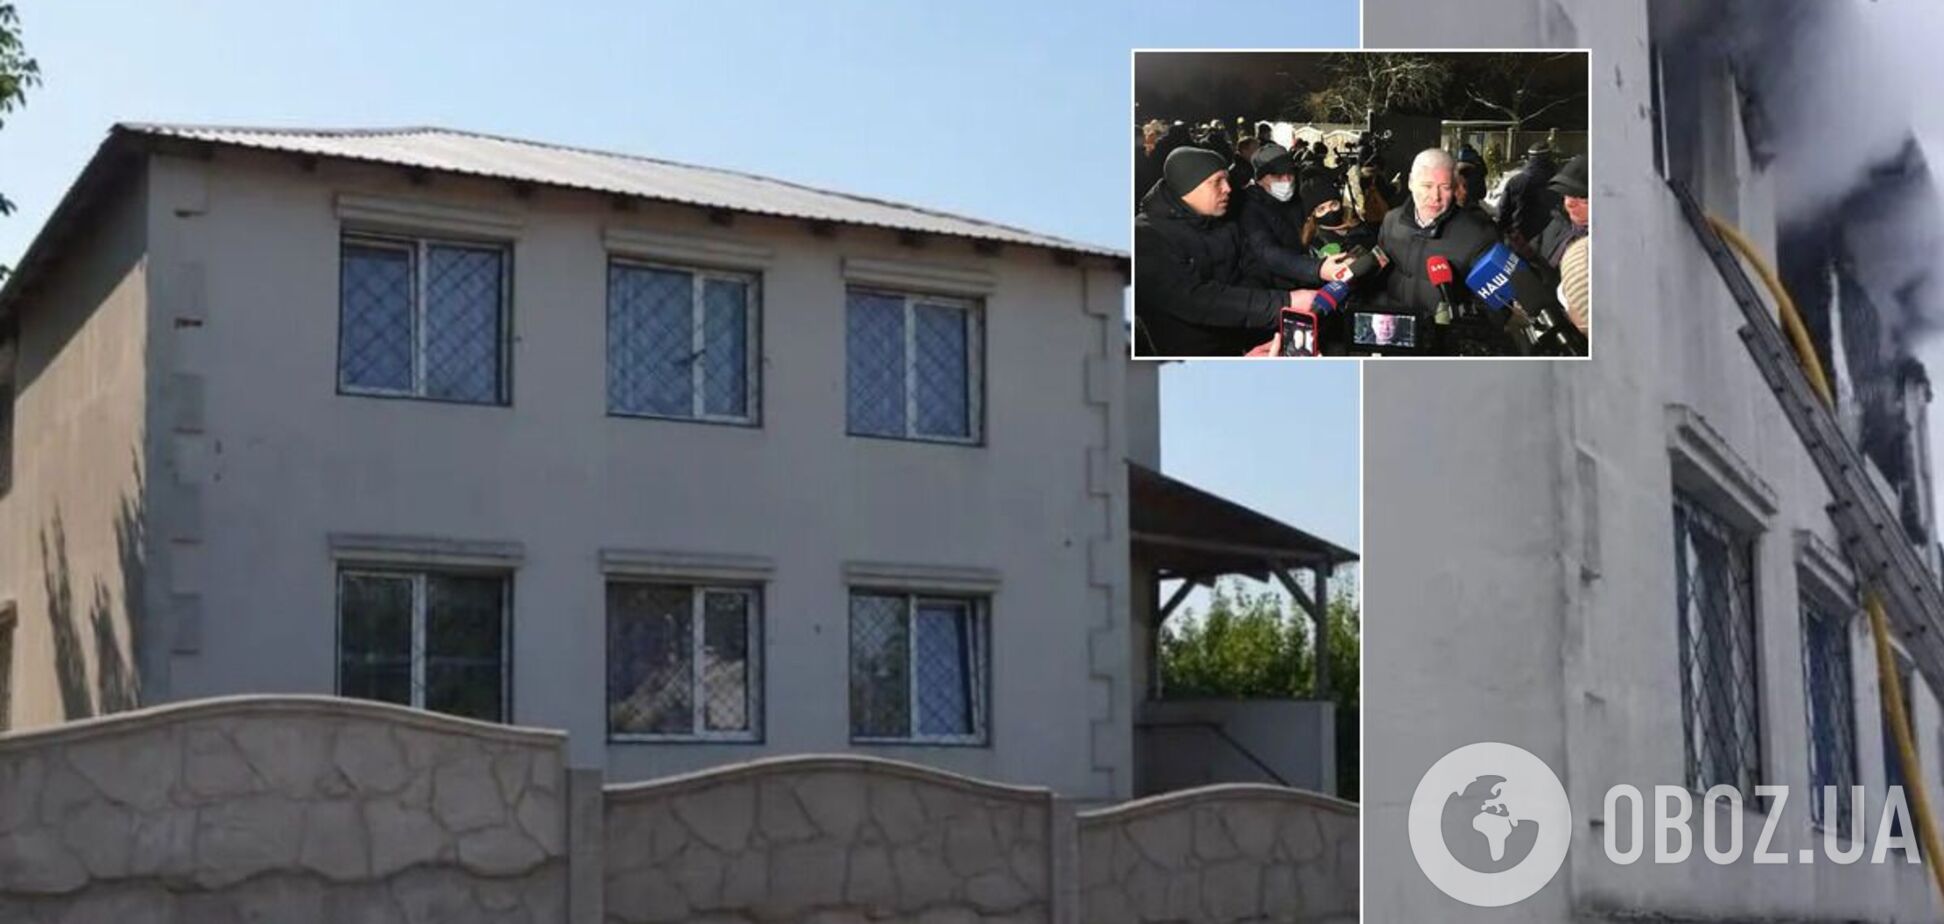 Будинок для літніх людей у Харкові працював нелегально: названо ймовірну причину пожежі